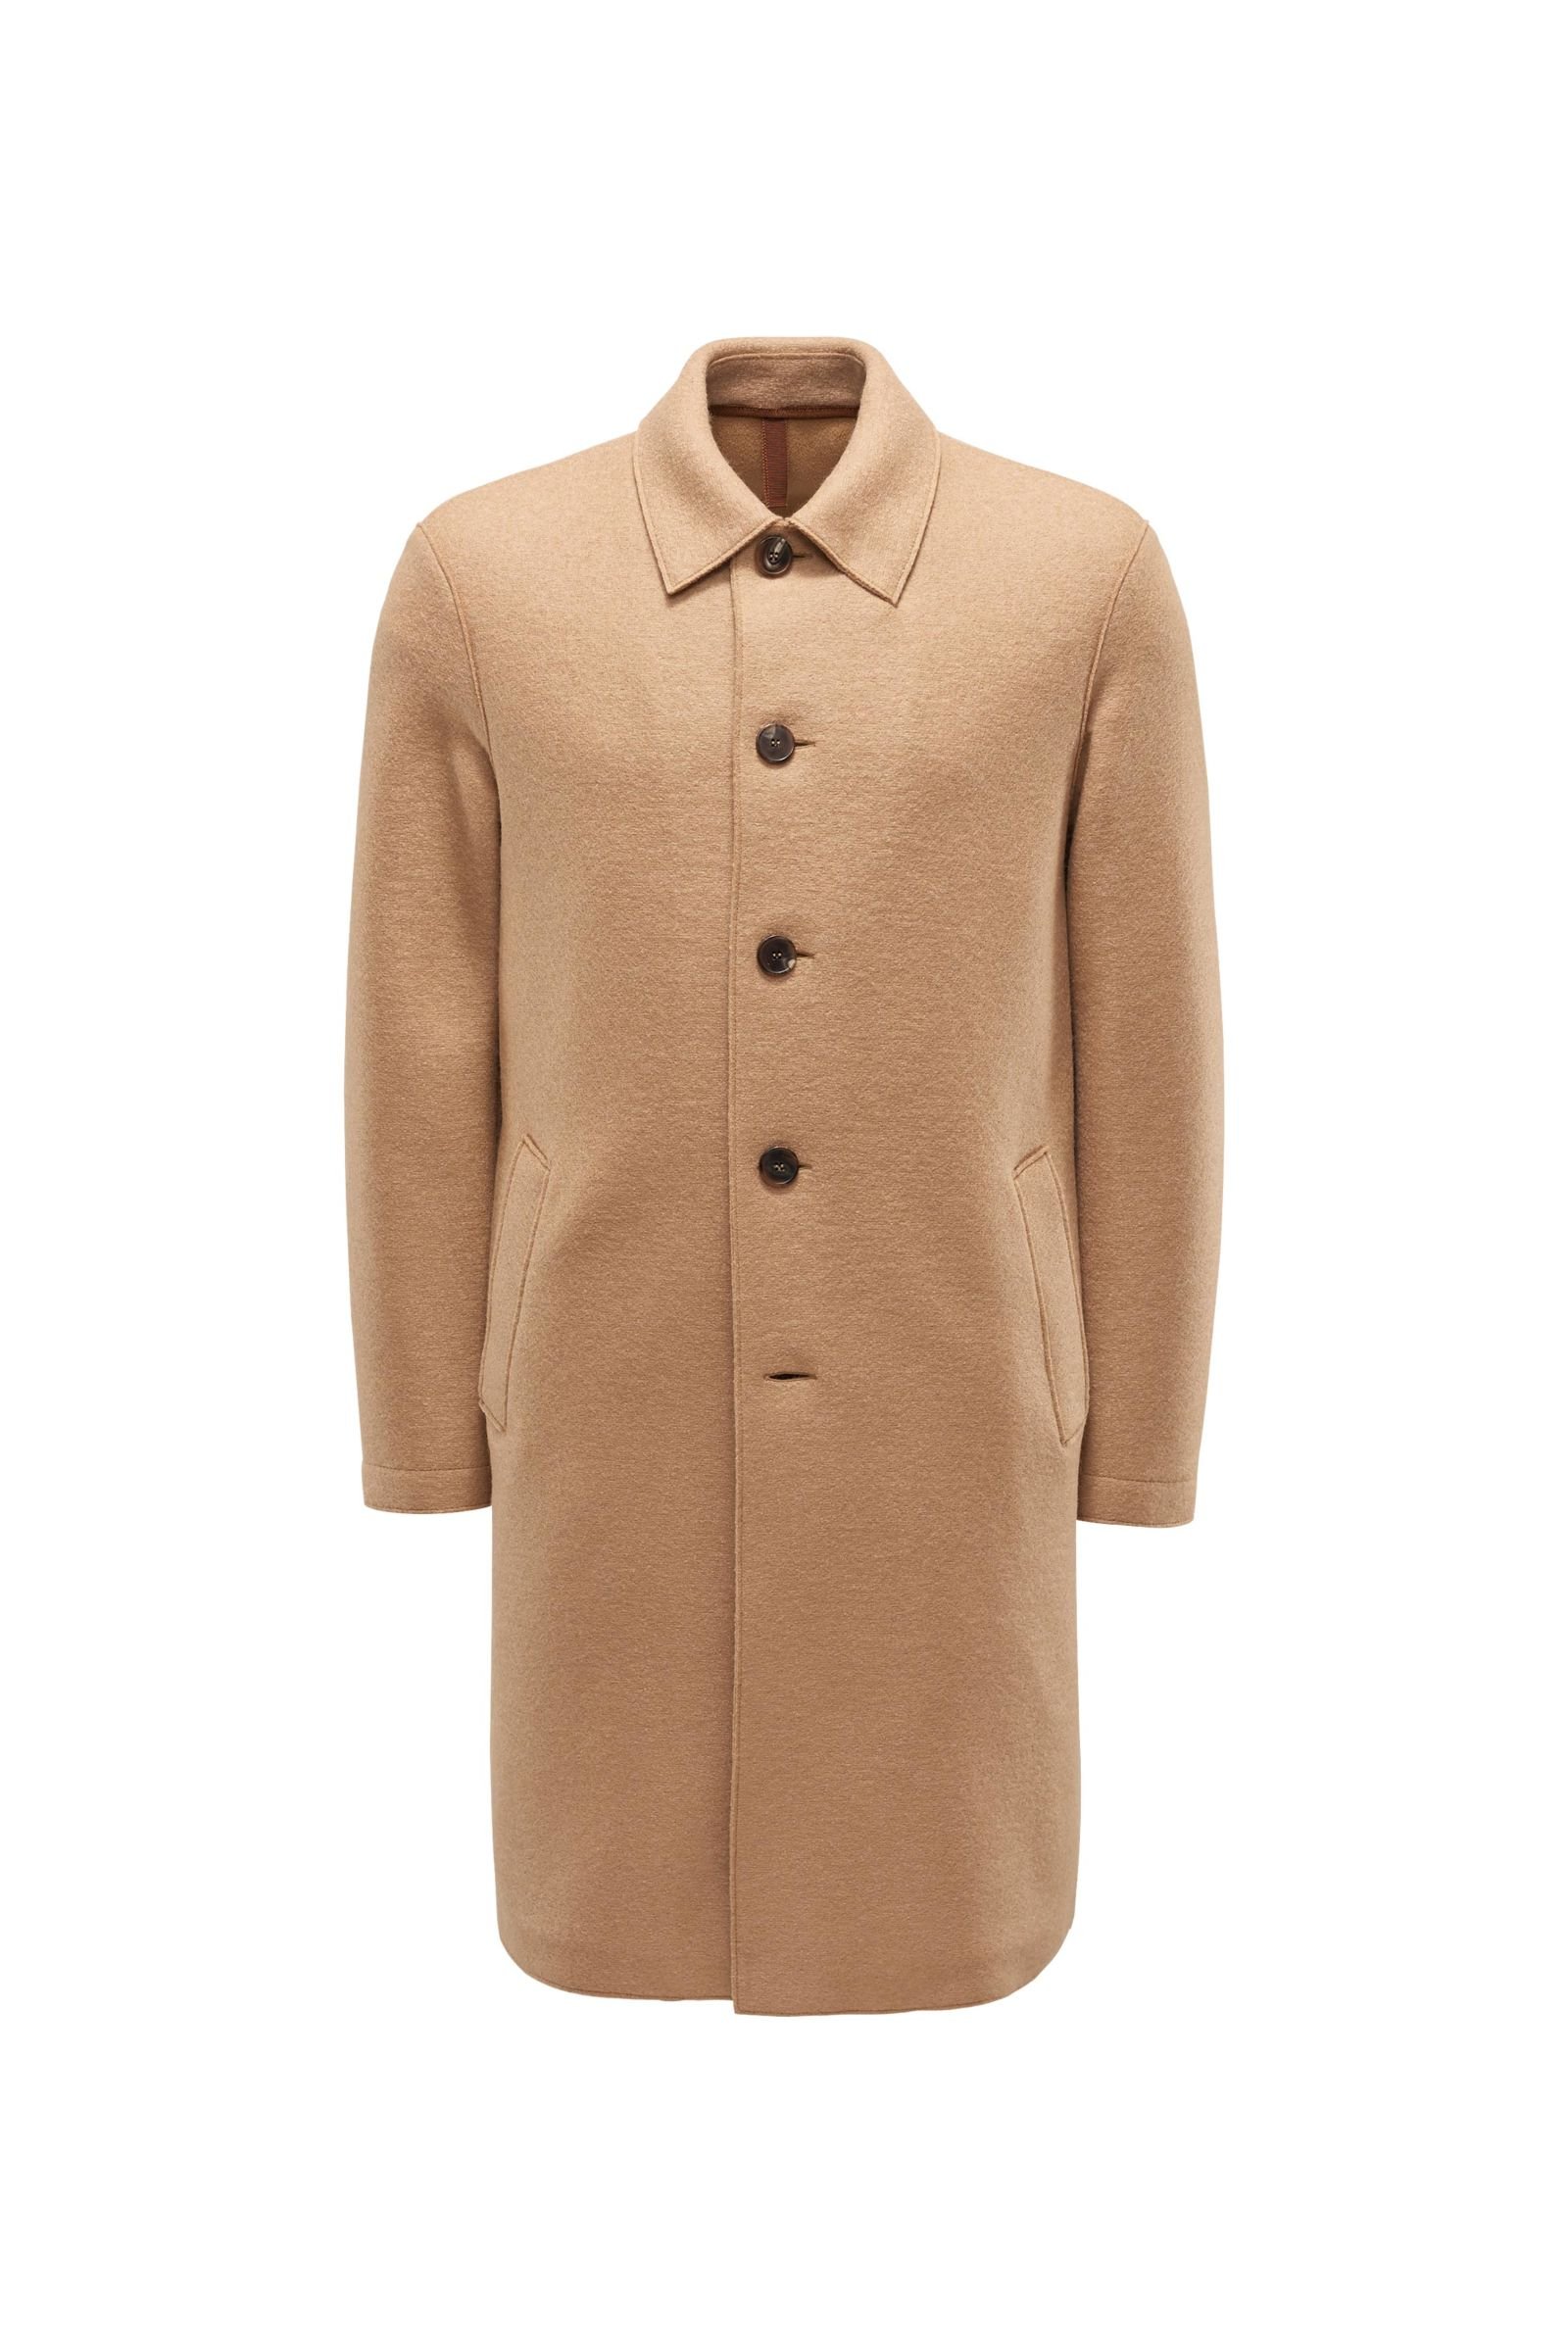 Wool coat 'Mac Over' light brown